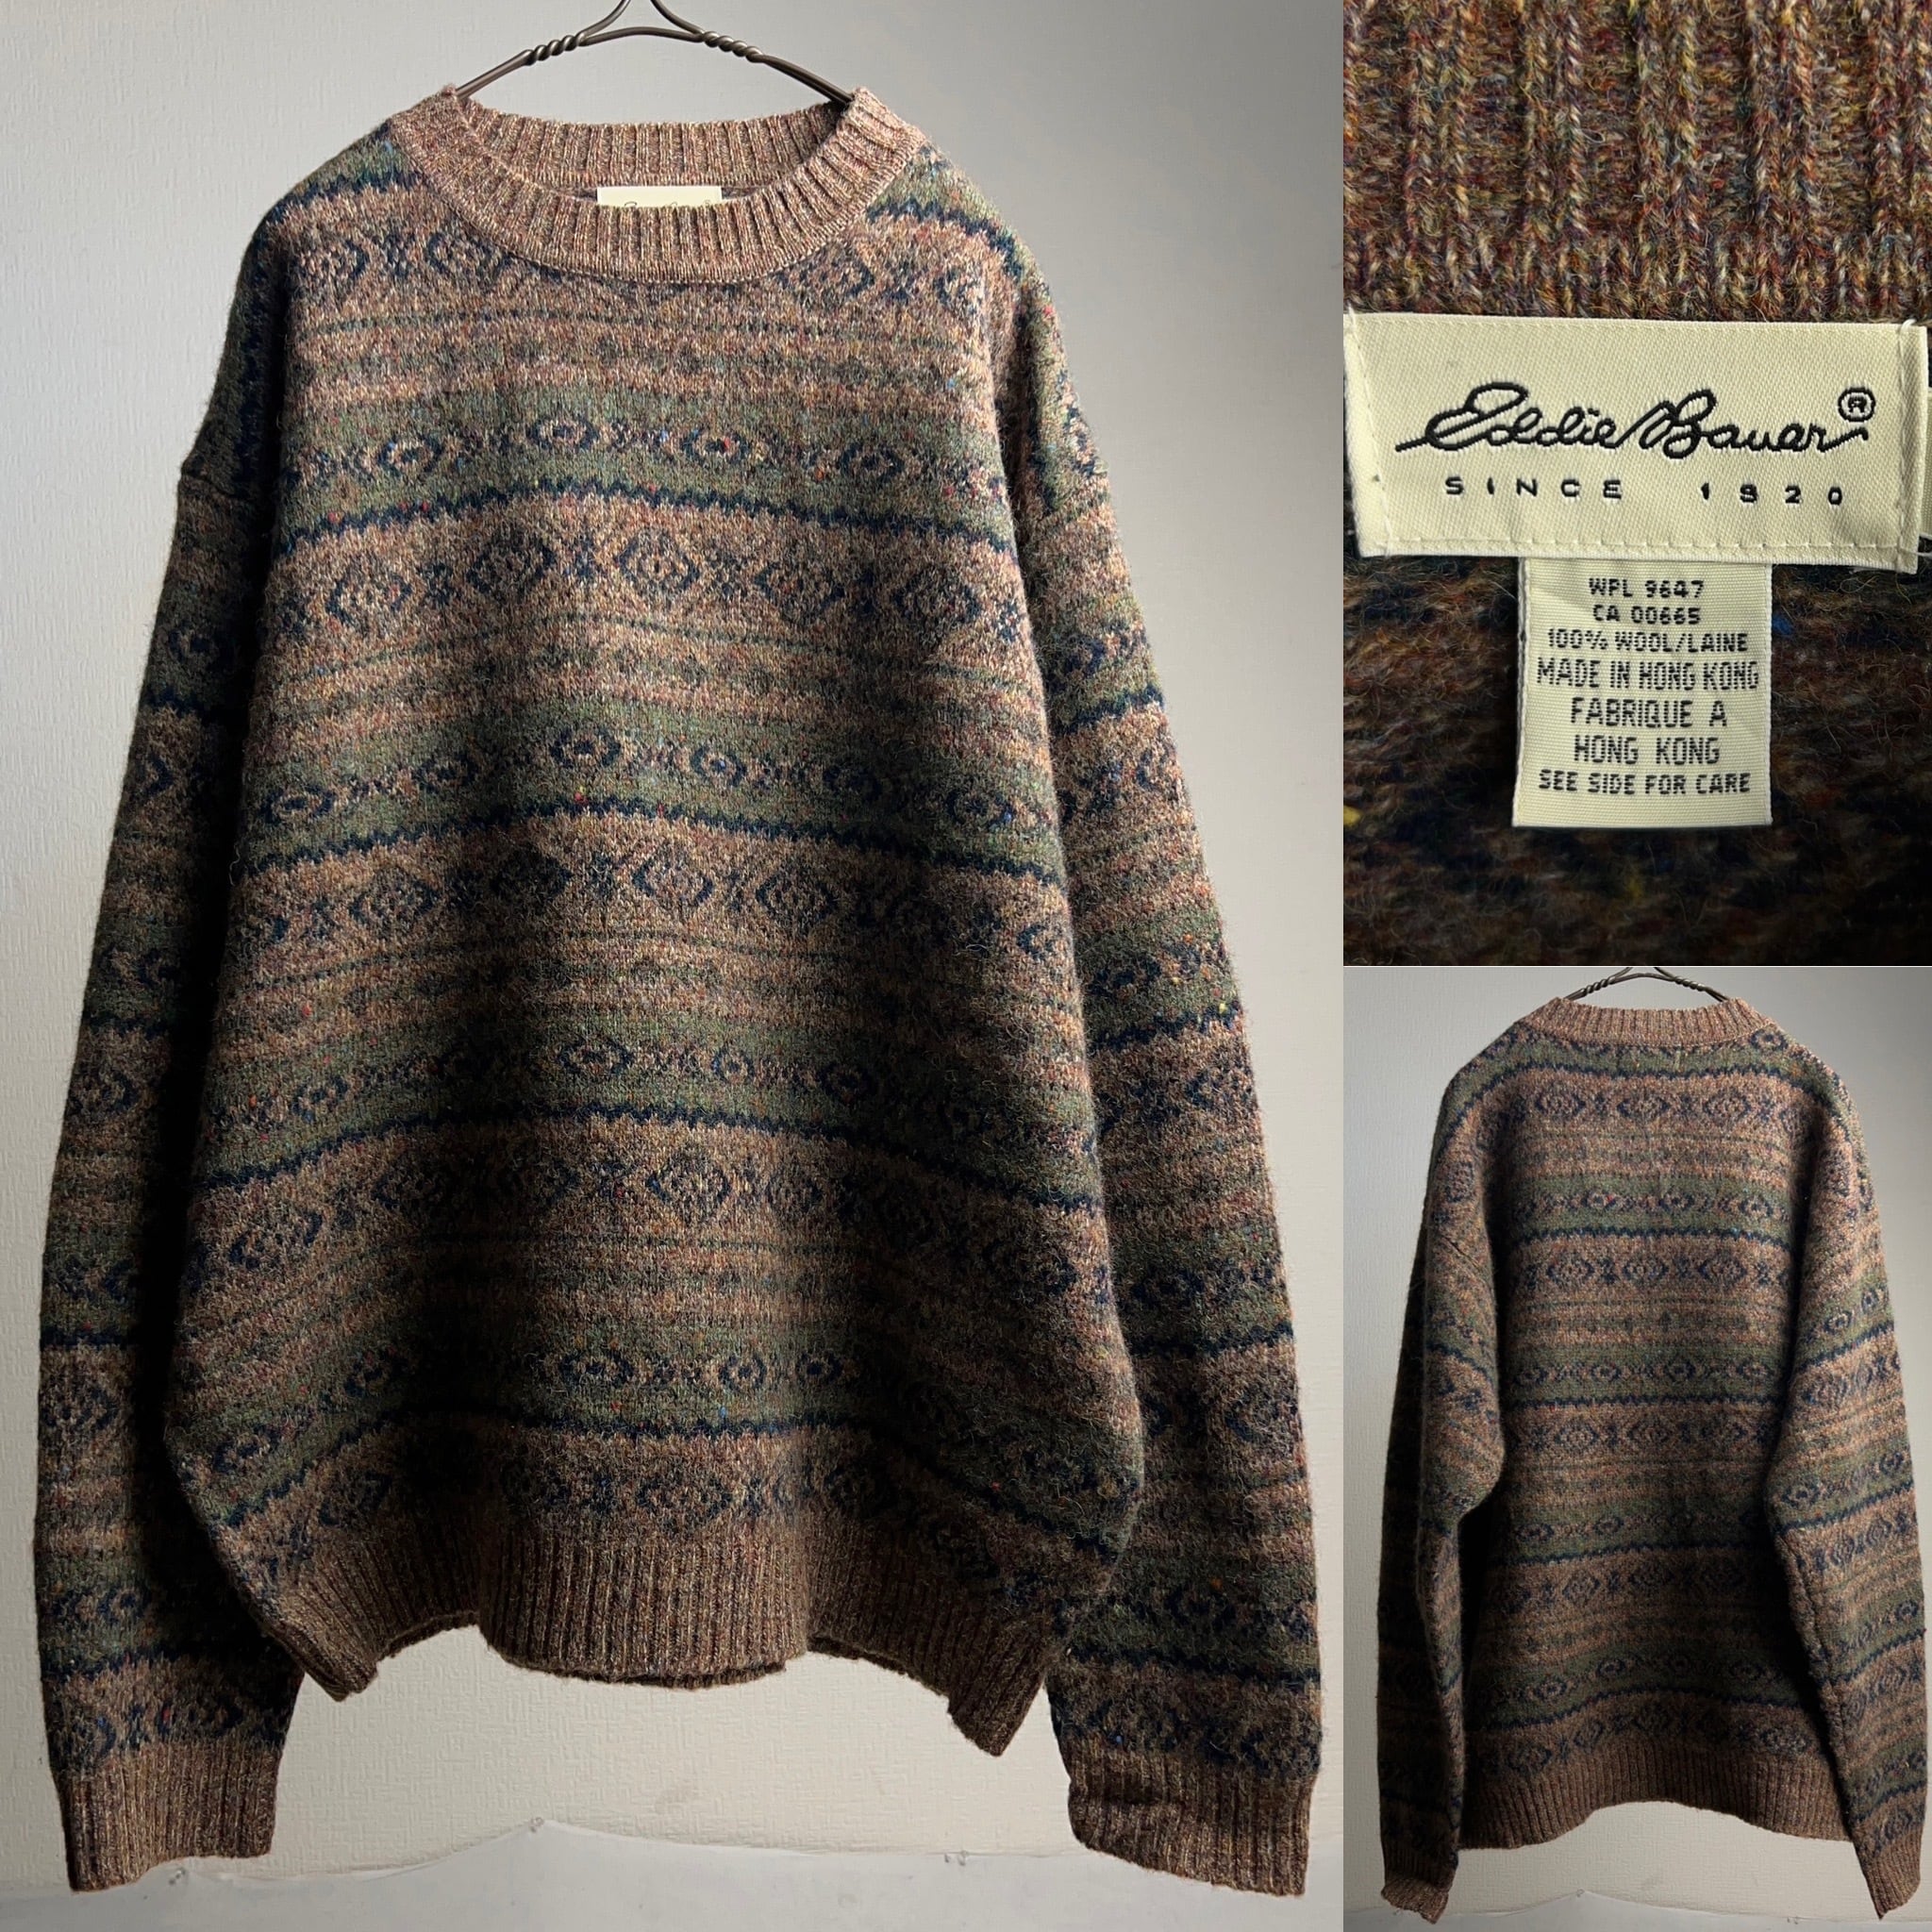 90's~00's “Eddie Bauer” Design Wool Knit Sweater SIZE XL 